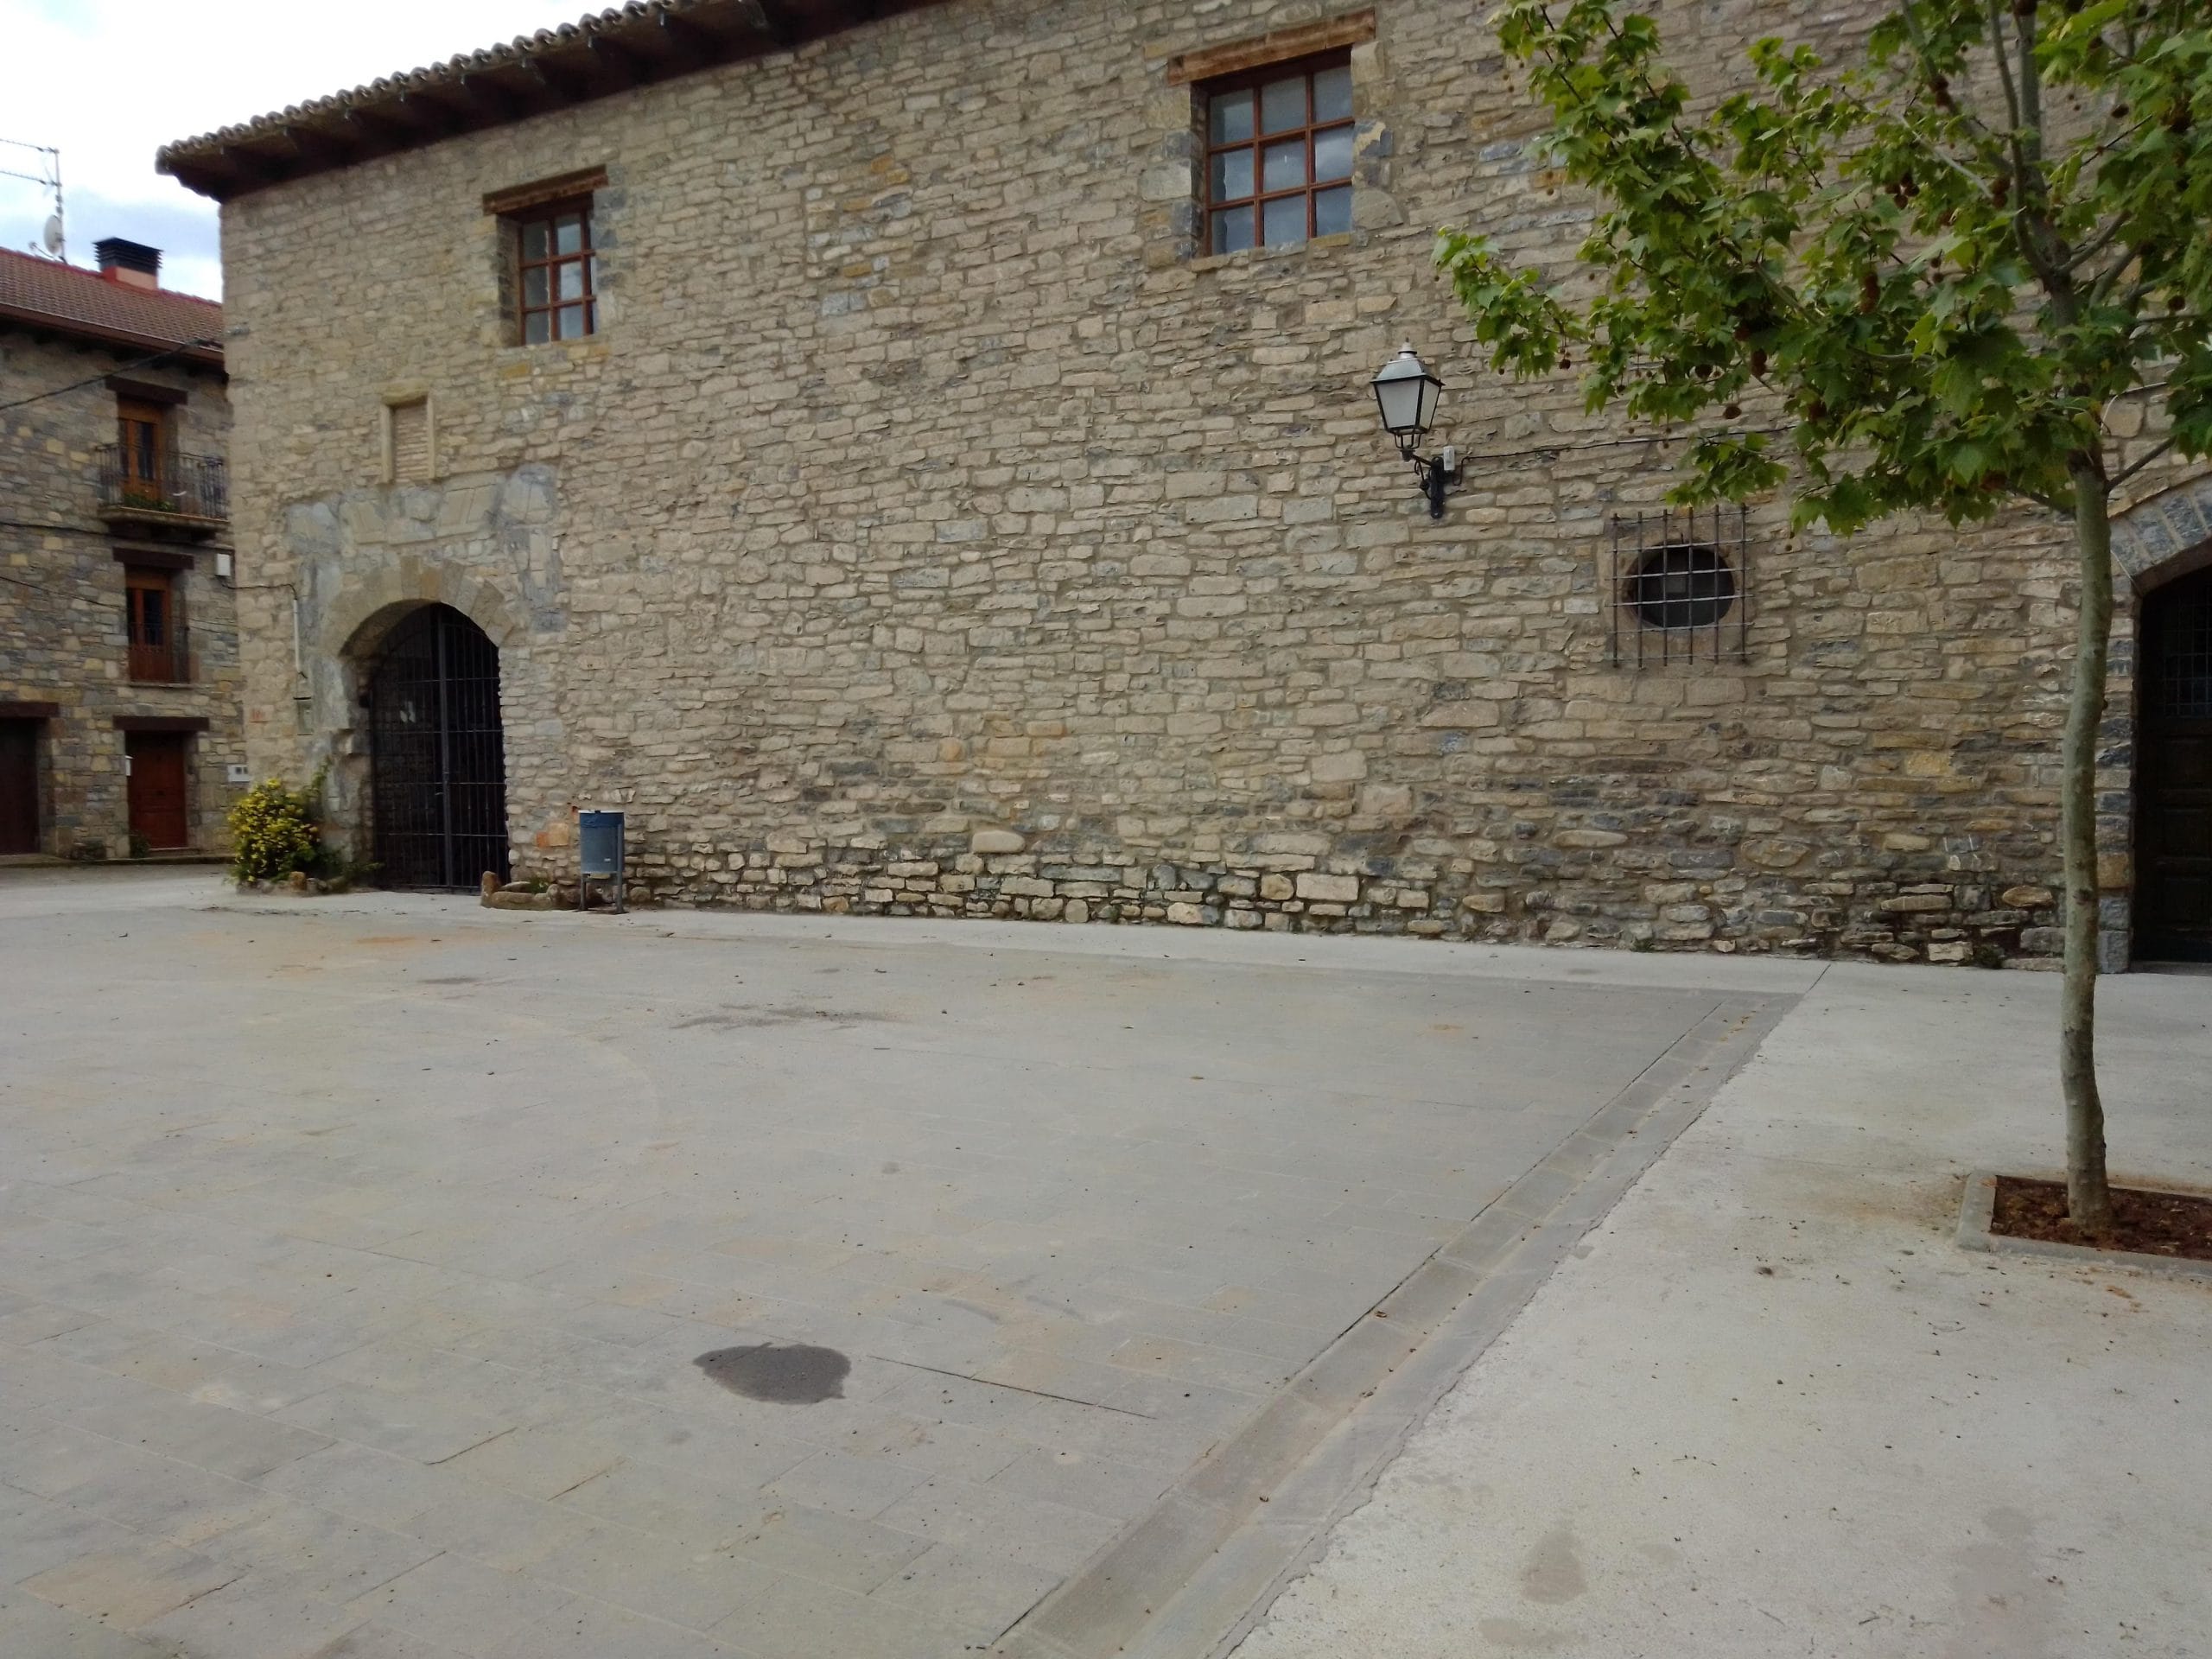 Facha rehabilitada de un palacio histórico en piedra vista en Javierregay, Jaca